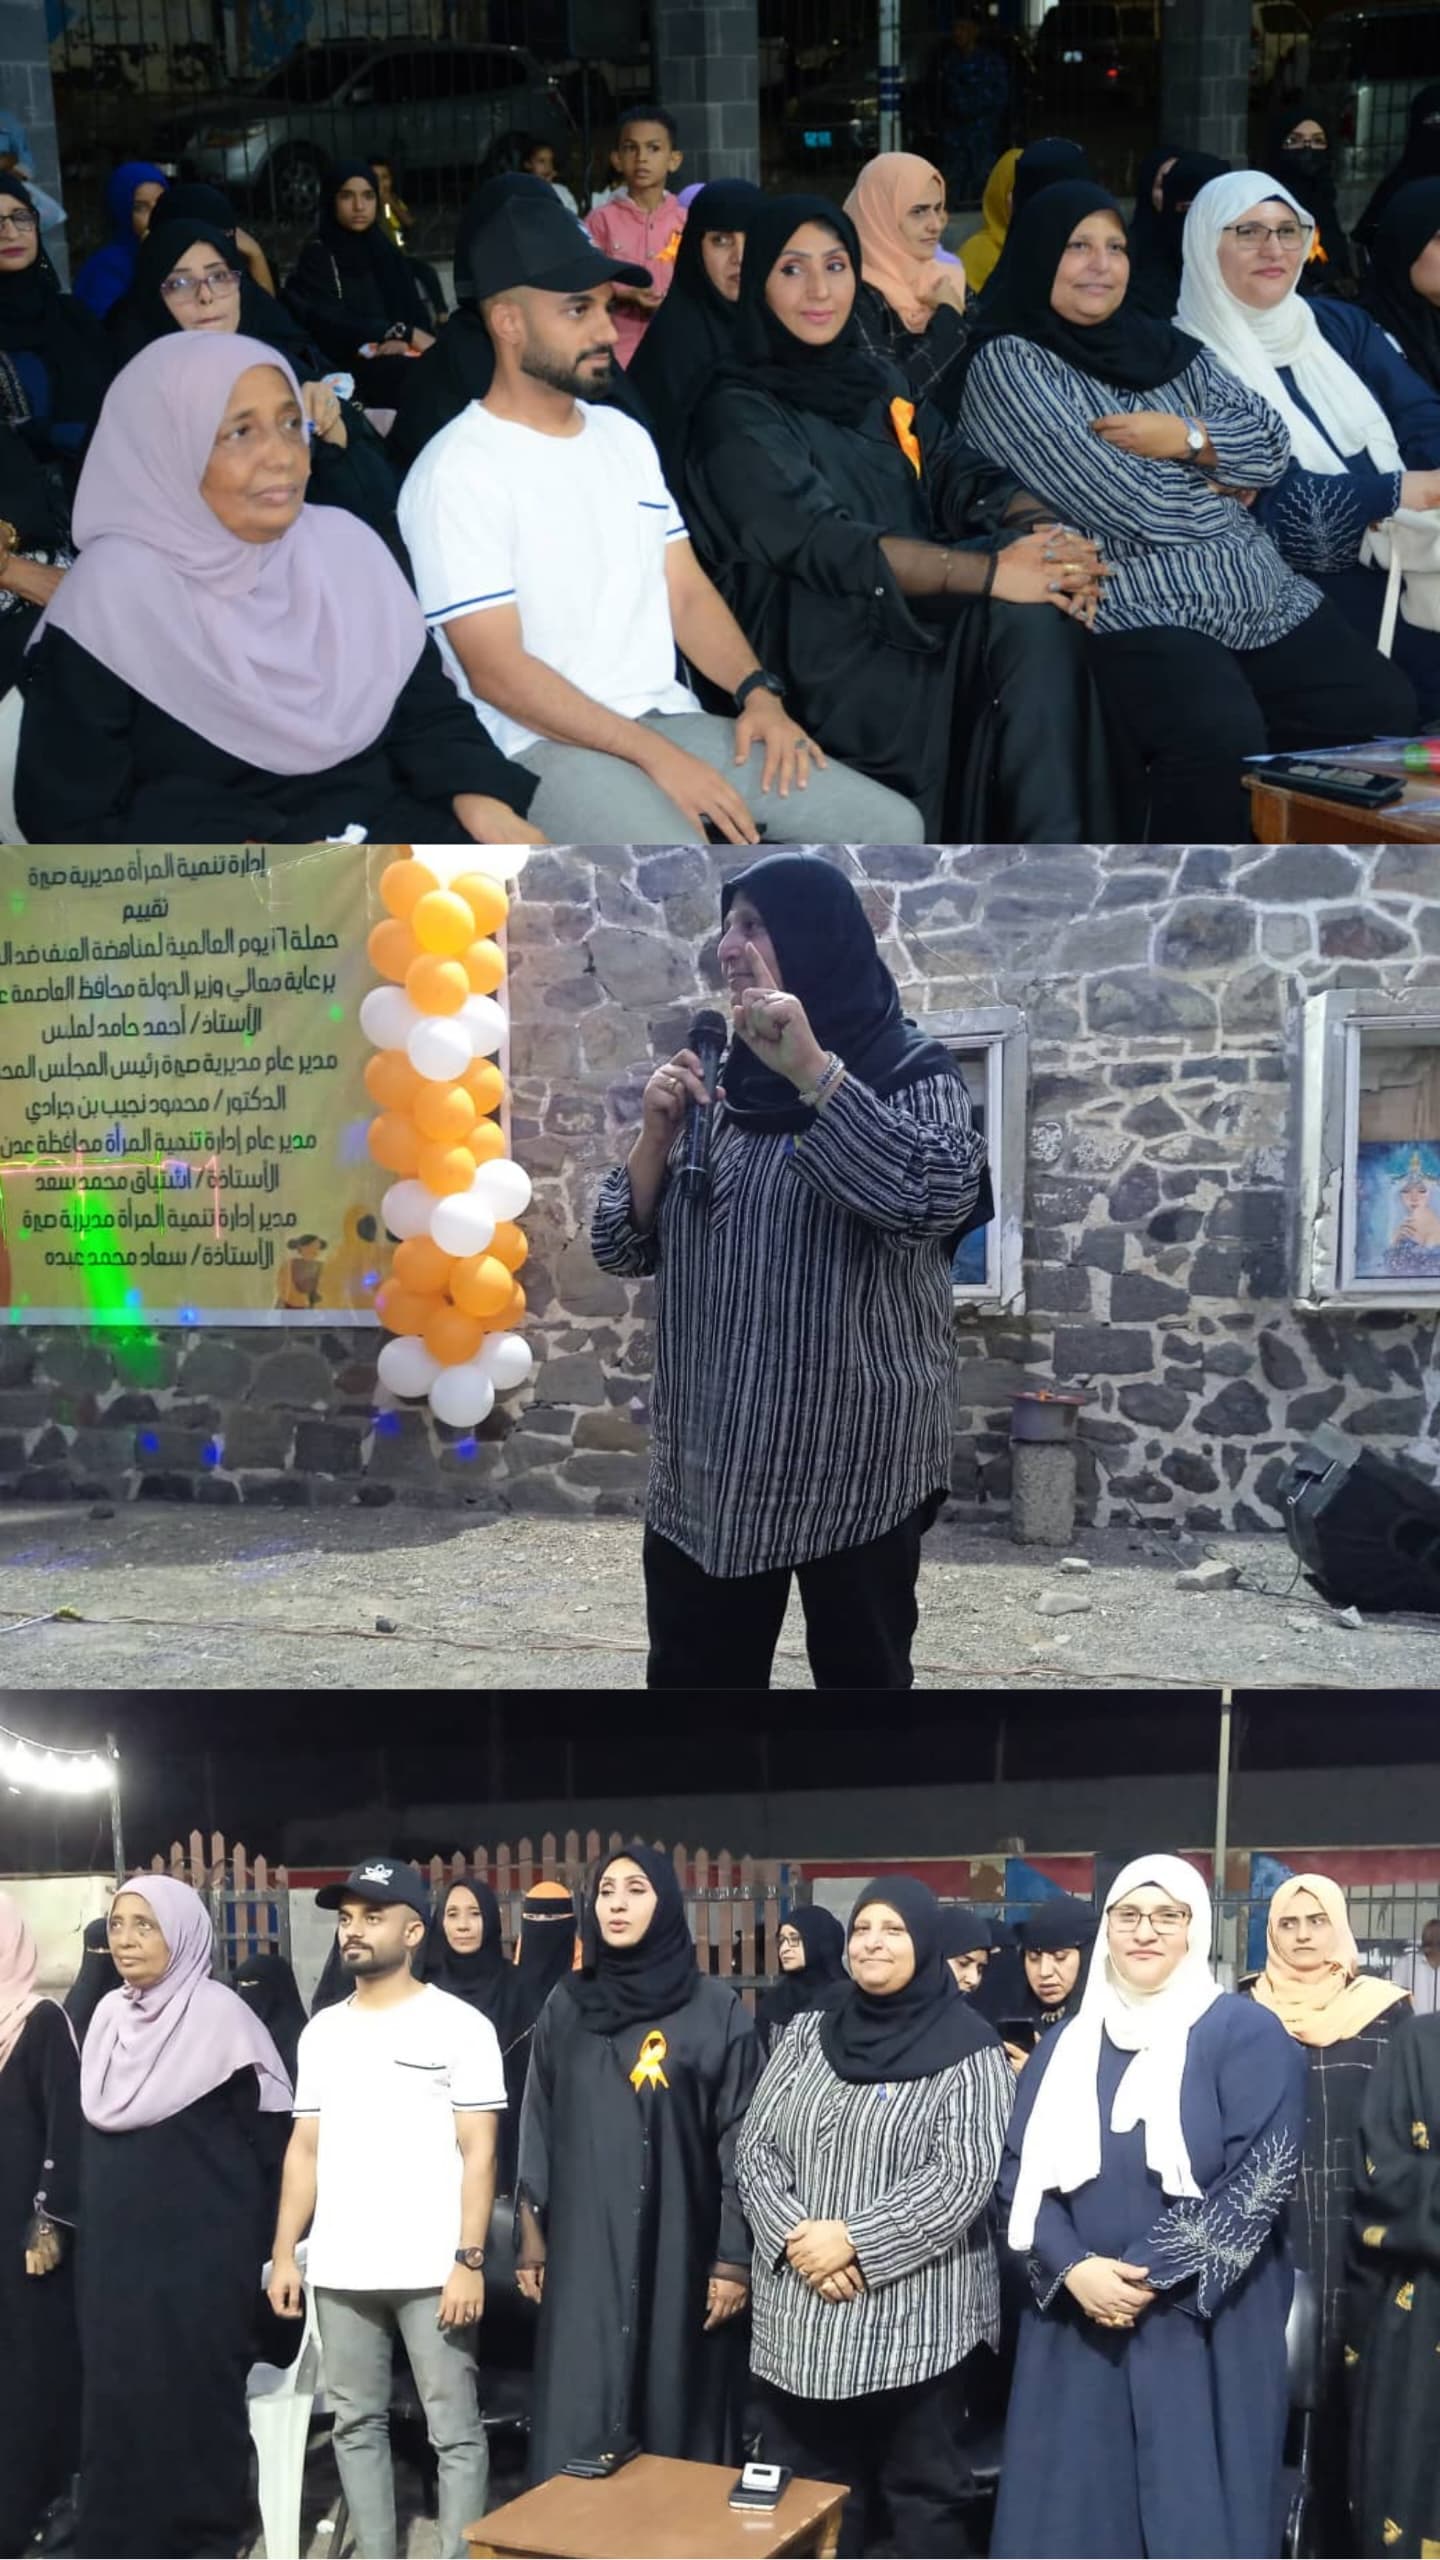 إتحاد نساء اليمن في عدن يشارك بحفل إدارة تنمية المرأة بمديرية صيره لحملة مناهضة العنف ضد المرأة